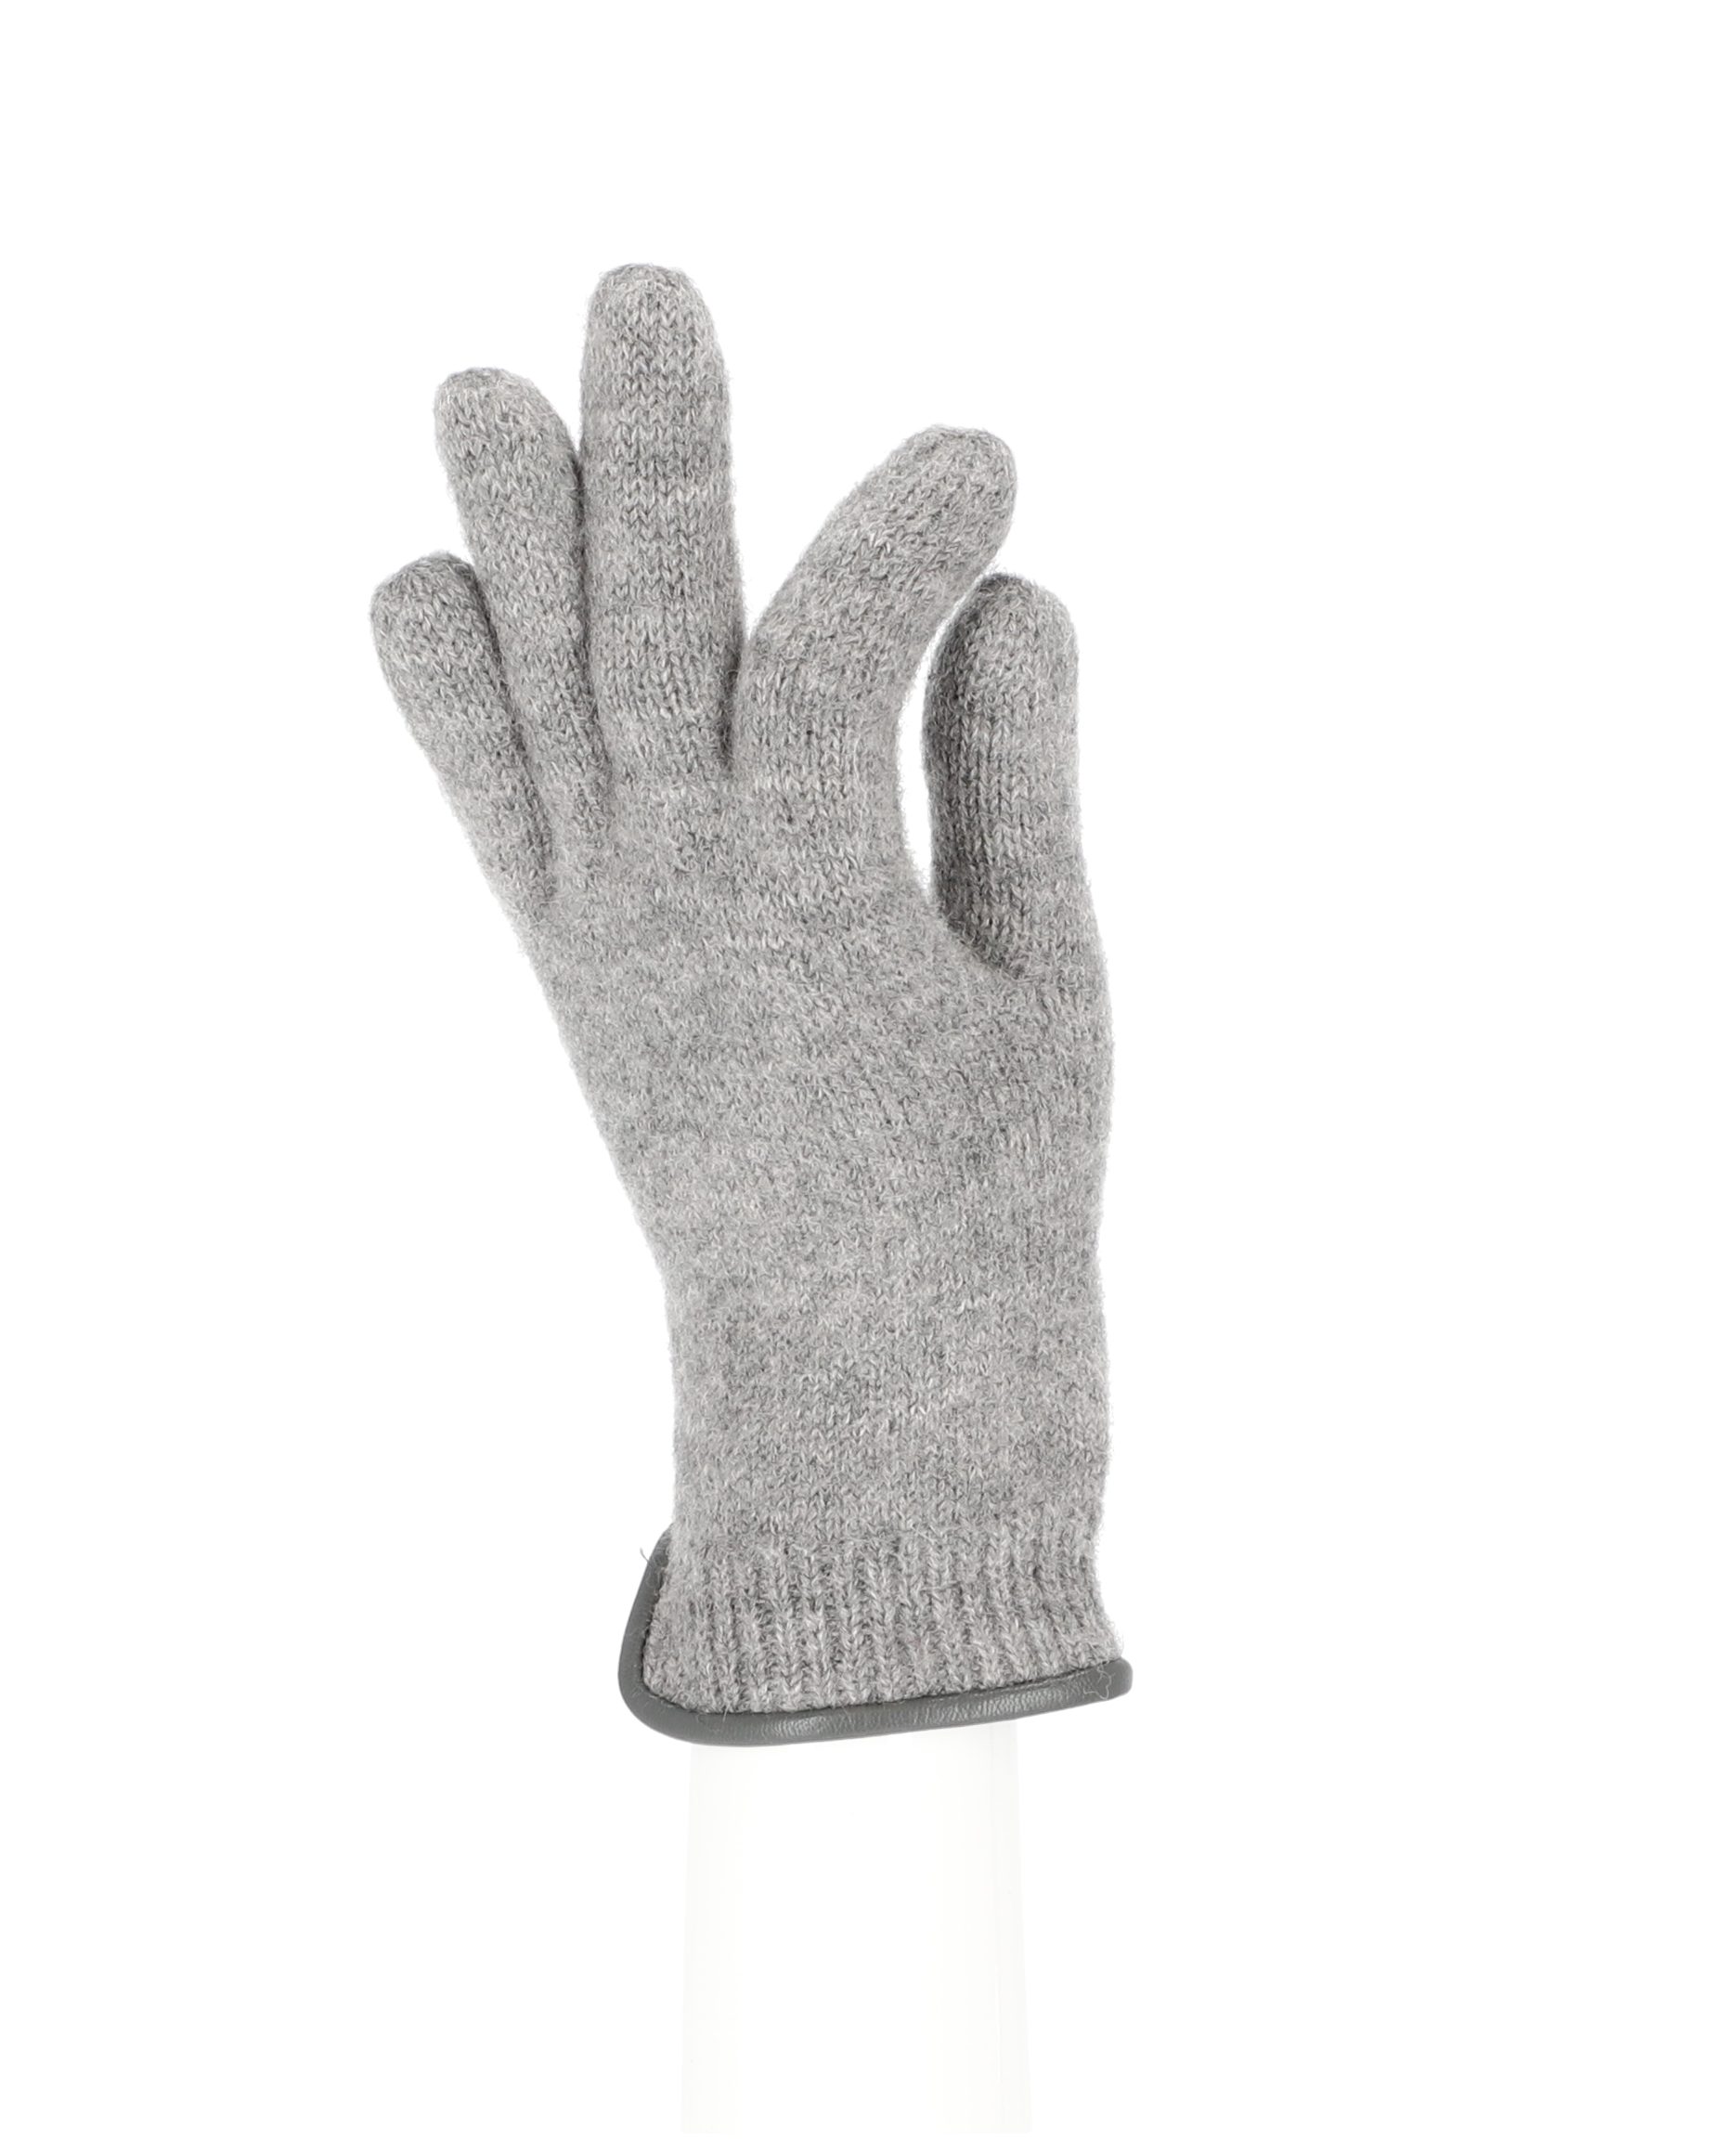 Strickhandschuh halsüberkopf silber aus Accessoires Wolle Strickhandschuhe mit Lederkante gewalkter Handschuh